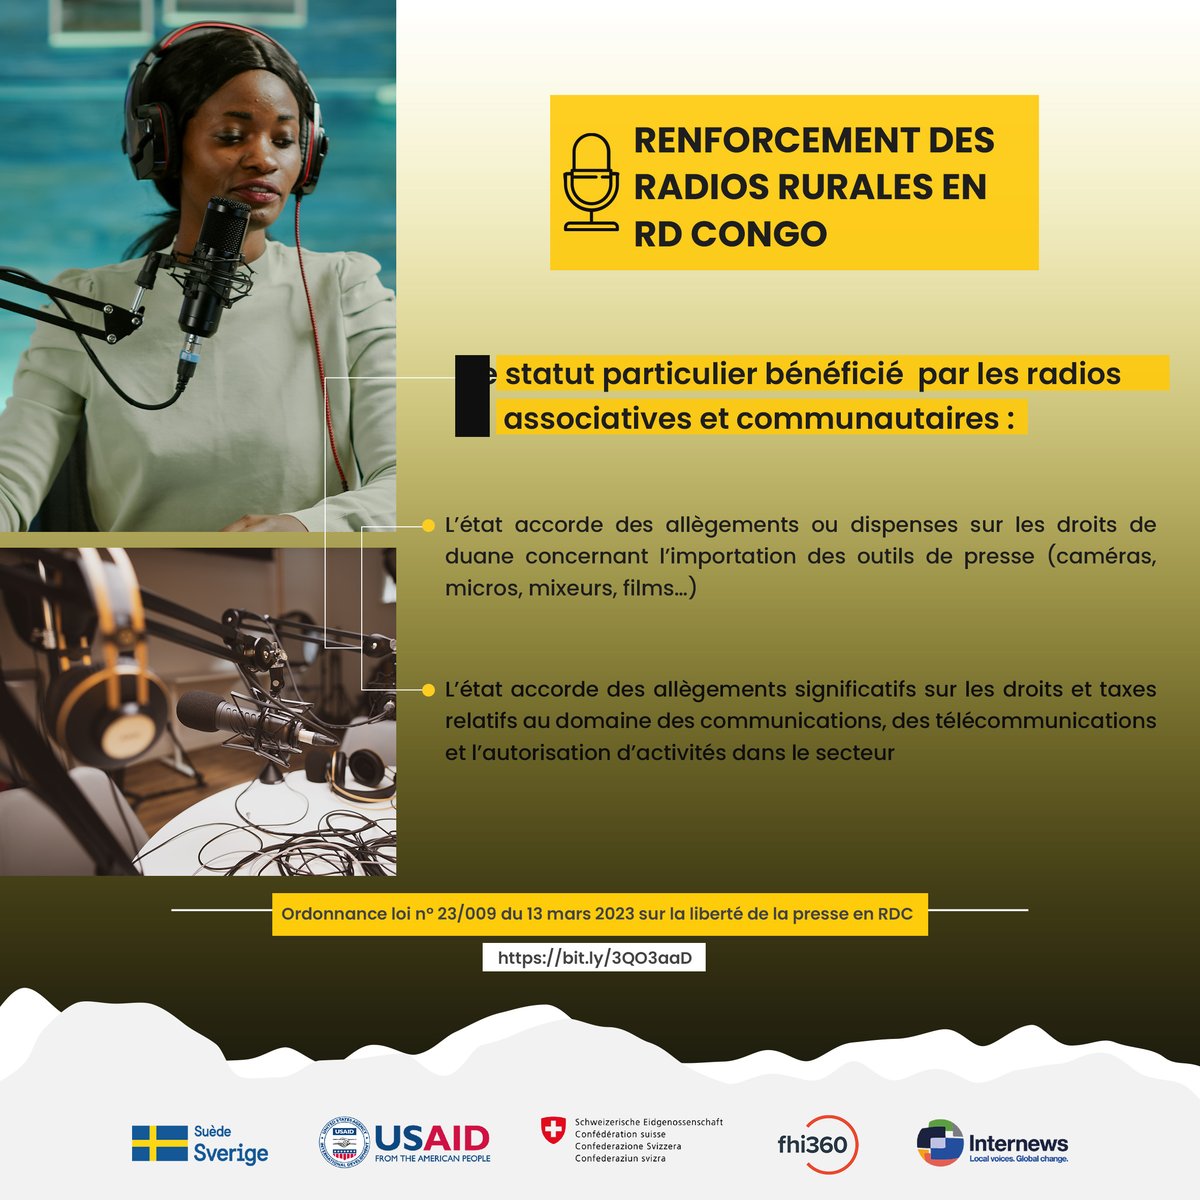 Radios rurales en RD Congo : Un statut particulier pour booster les radios associatives et communautaires !